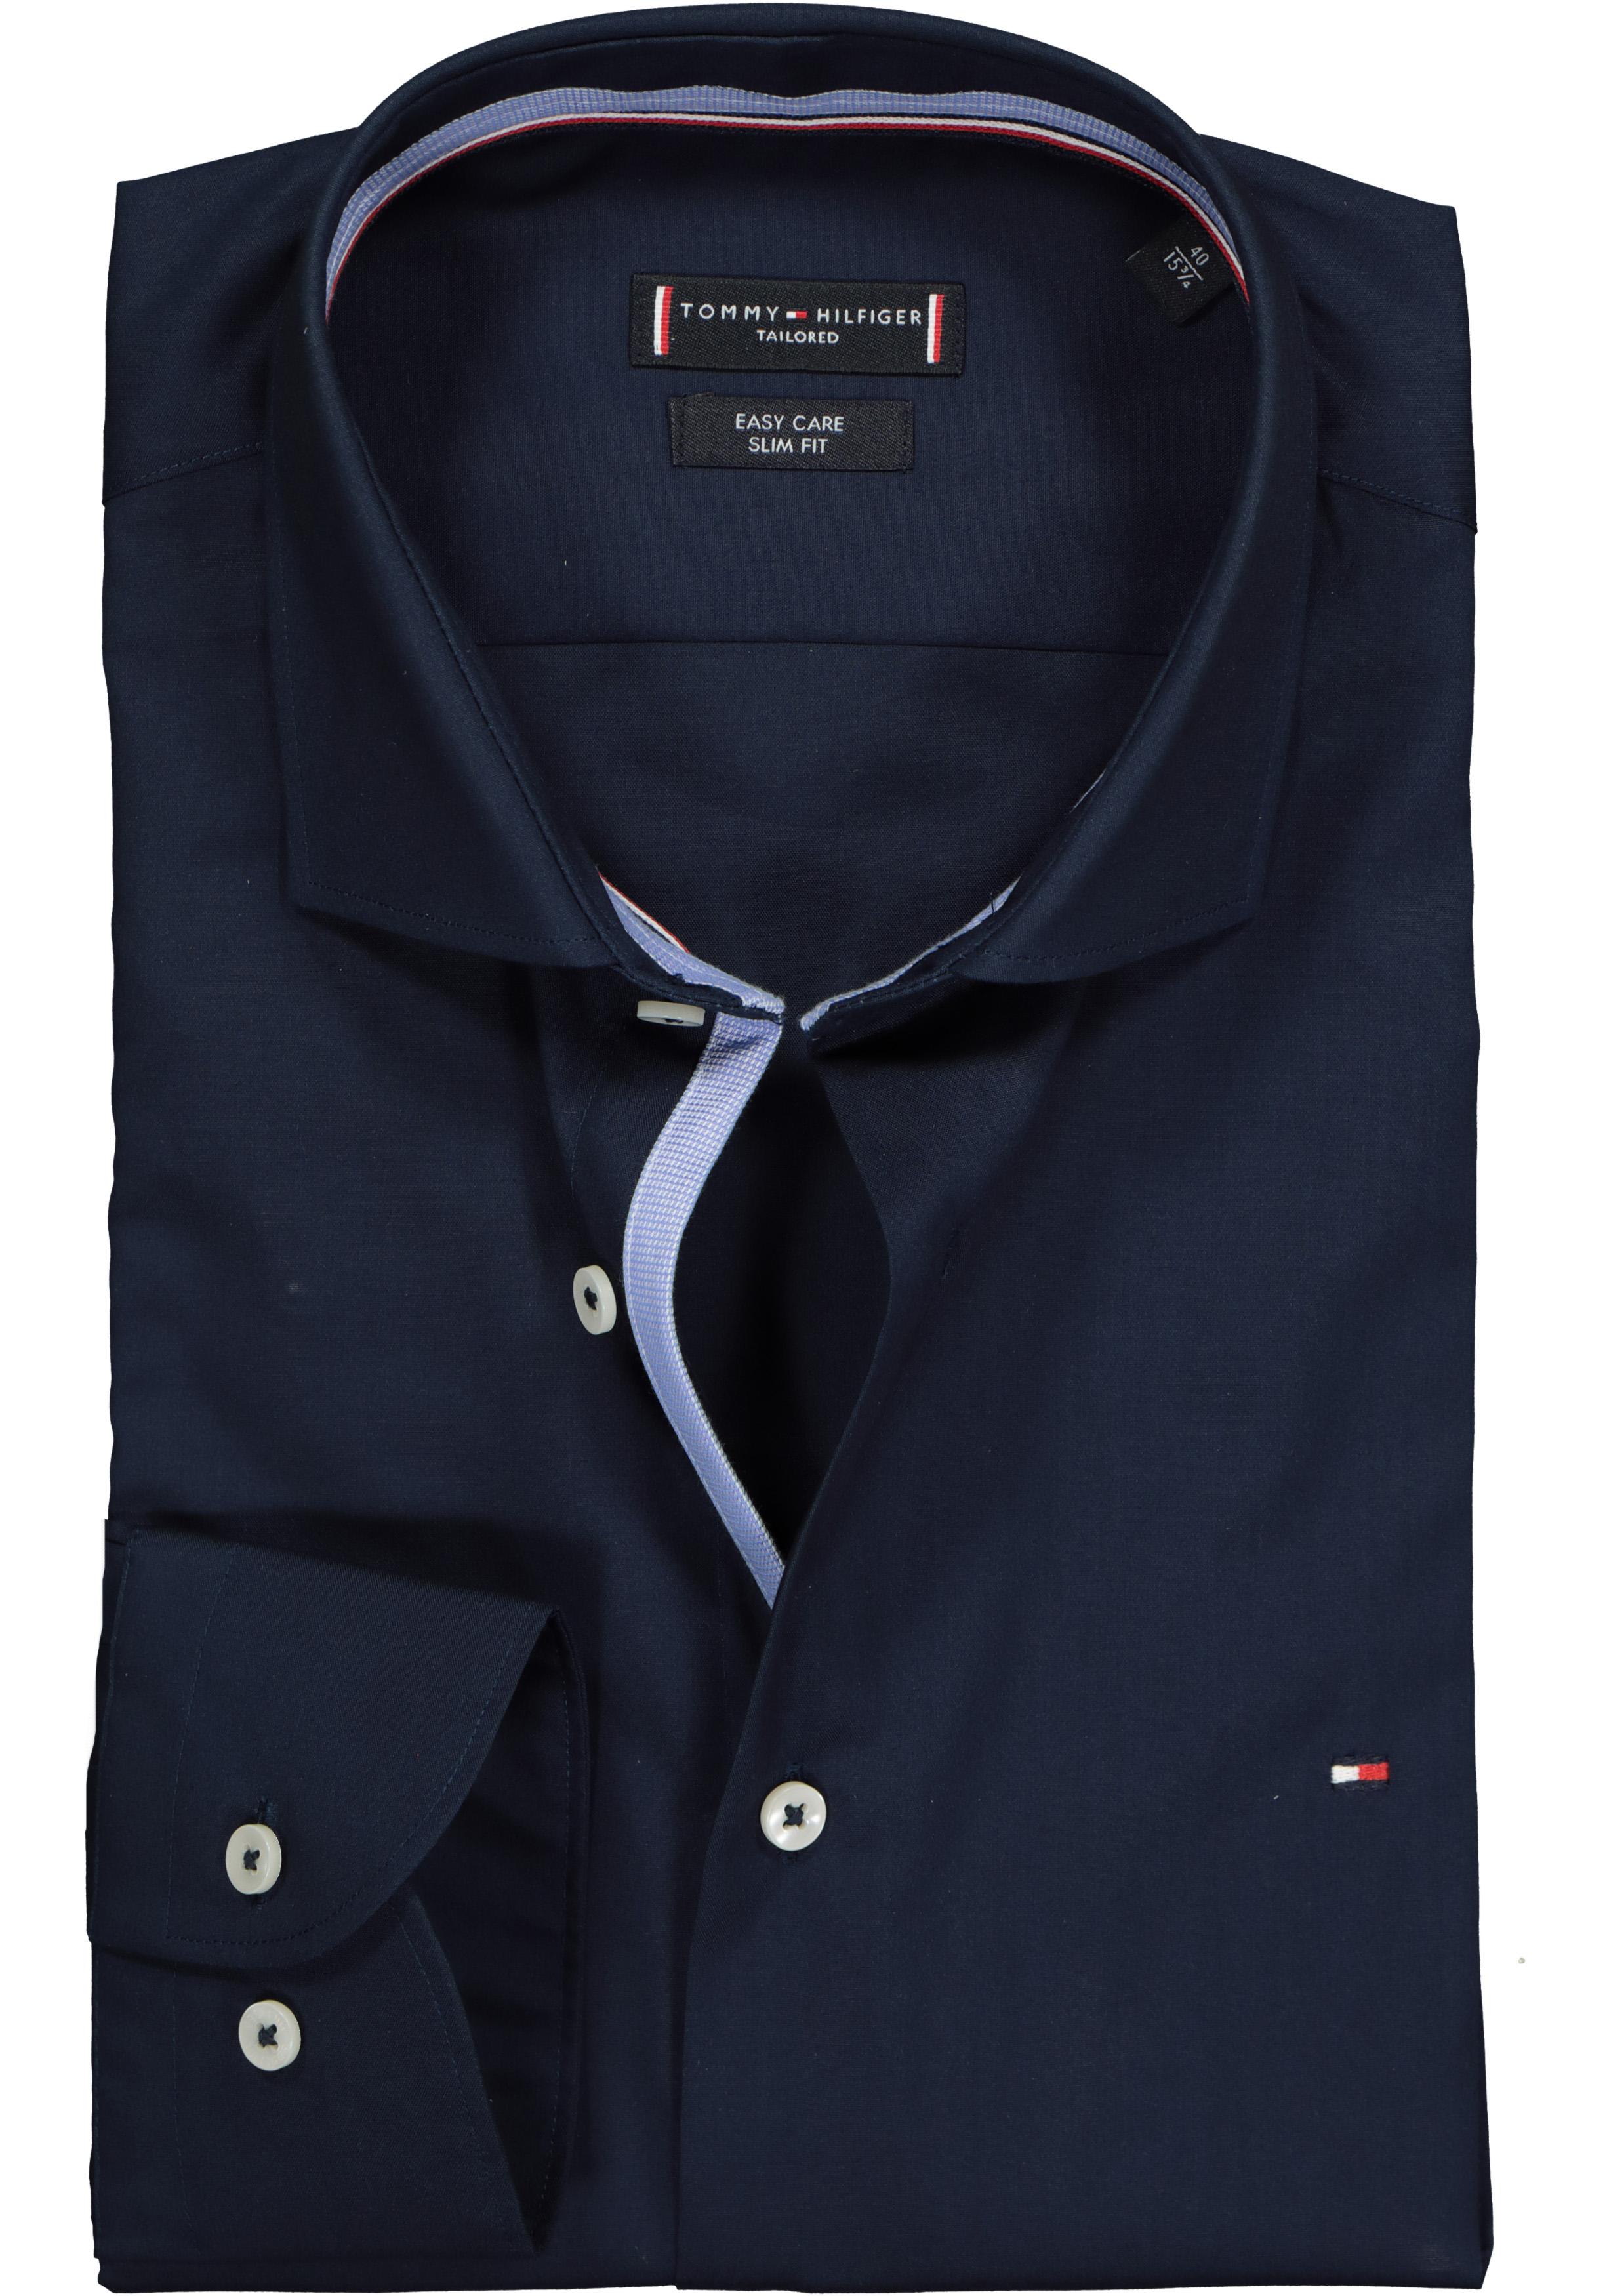 Tommy Hilfiger Classic slim fit overhemd, donkerblauw (contrast) - Shop de voorjaarsmode